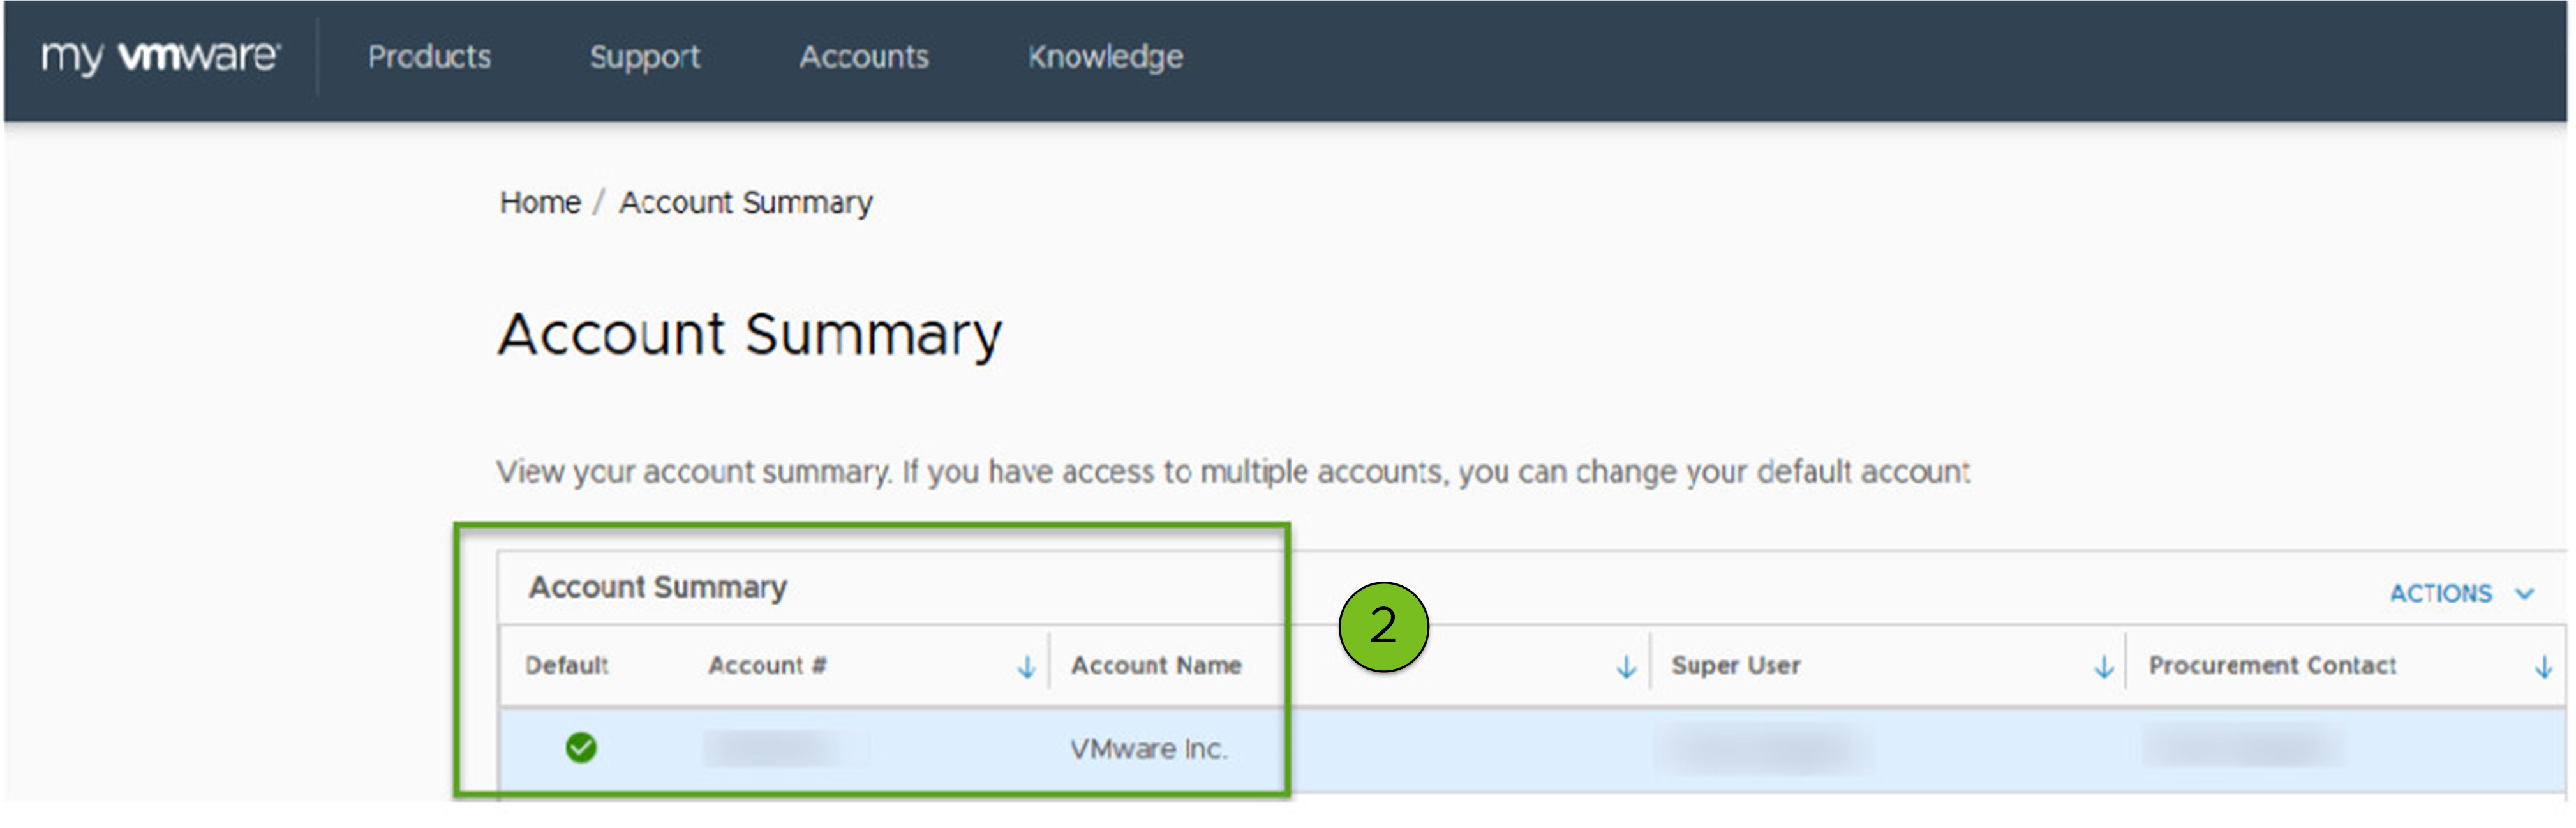 Sitio web: Botón de enlace rápido Administrar cuentas (Manage Accounts) en customerconnect.vmware.com